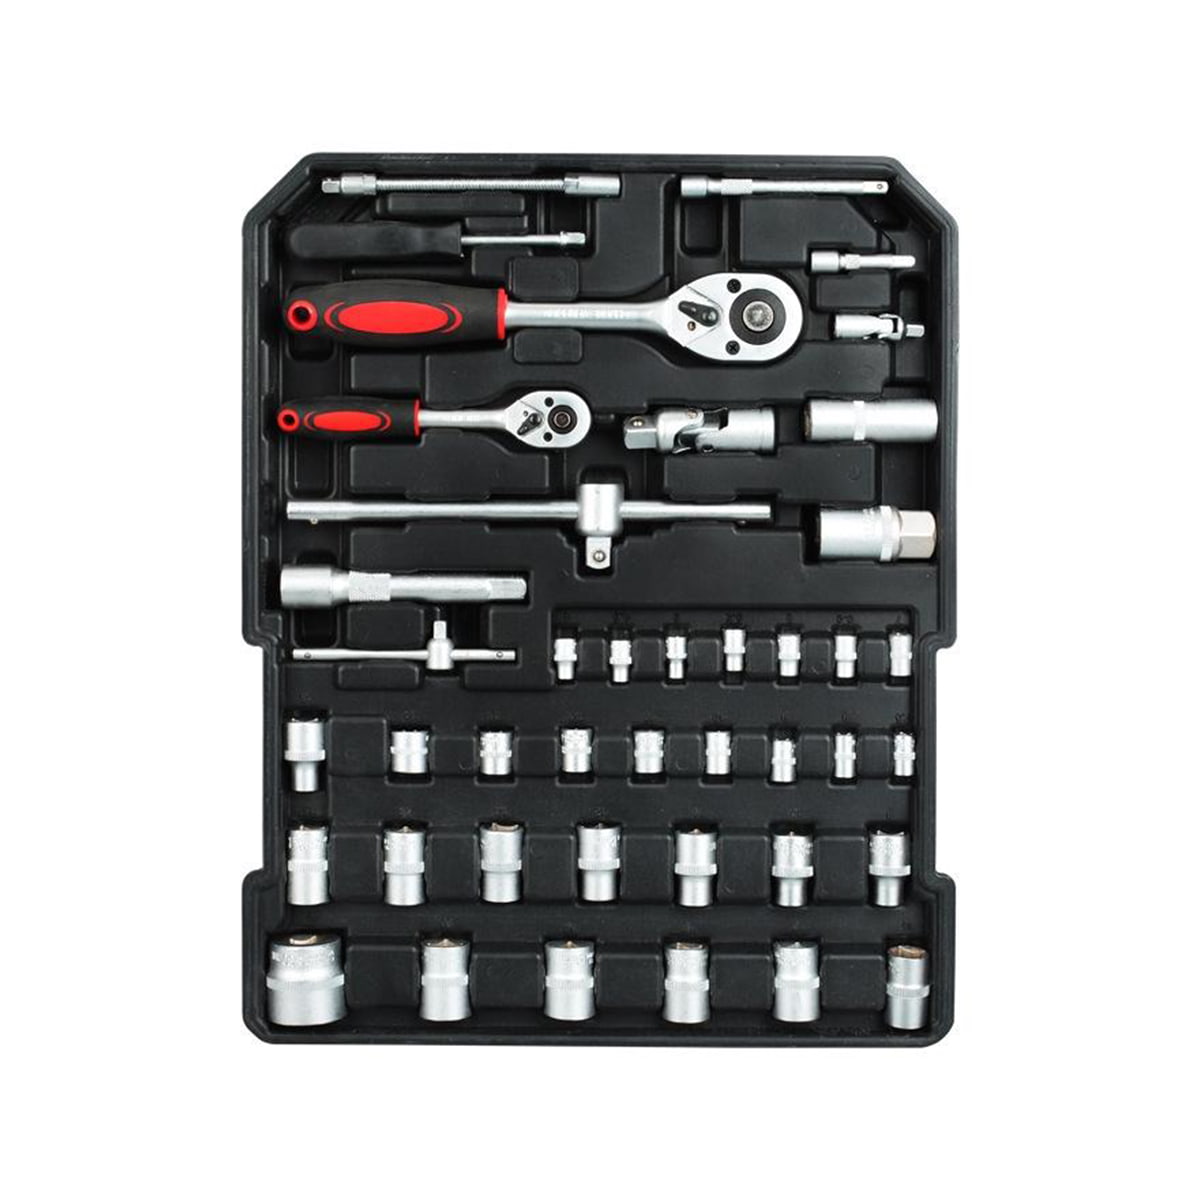 499 Pcs Ferramentas Professional Hardware Automotive Tool Socket Kit de Reparação de Automobile Tools Set